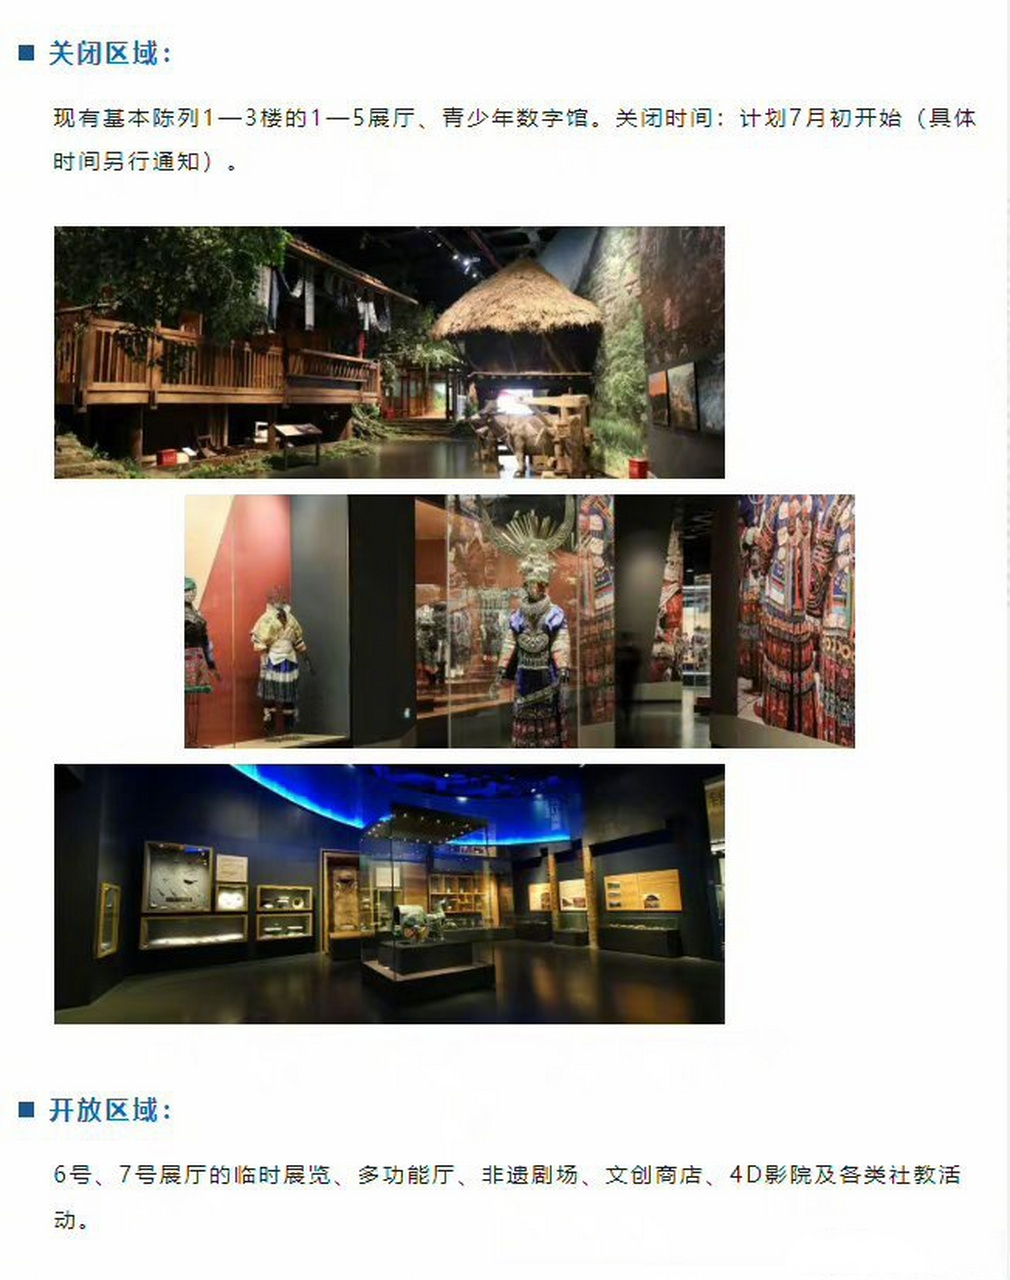 贵州省博物馆观后感图片